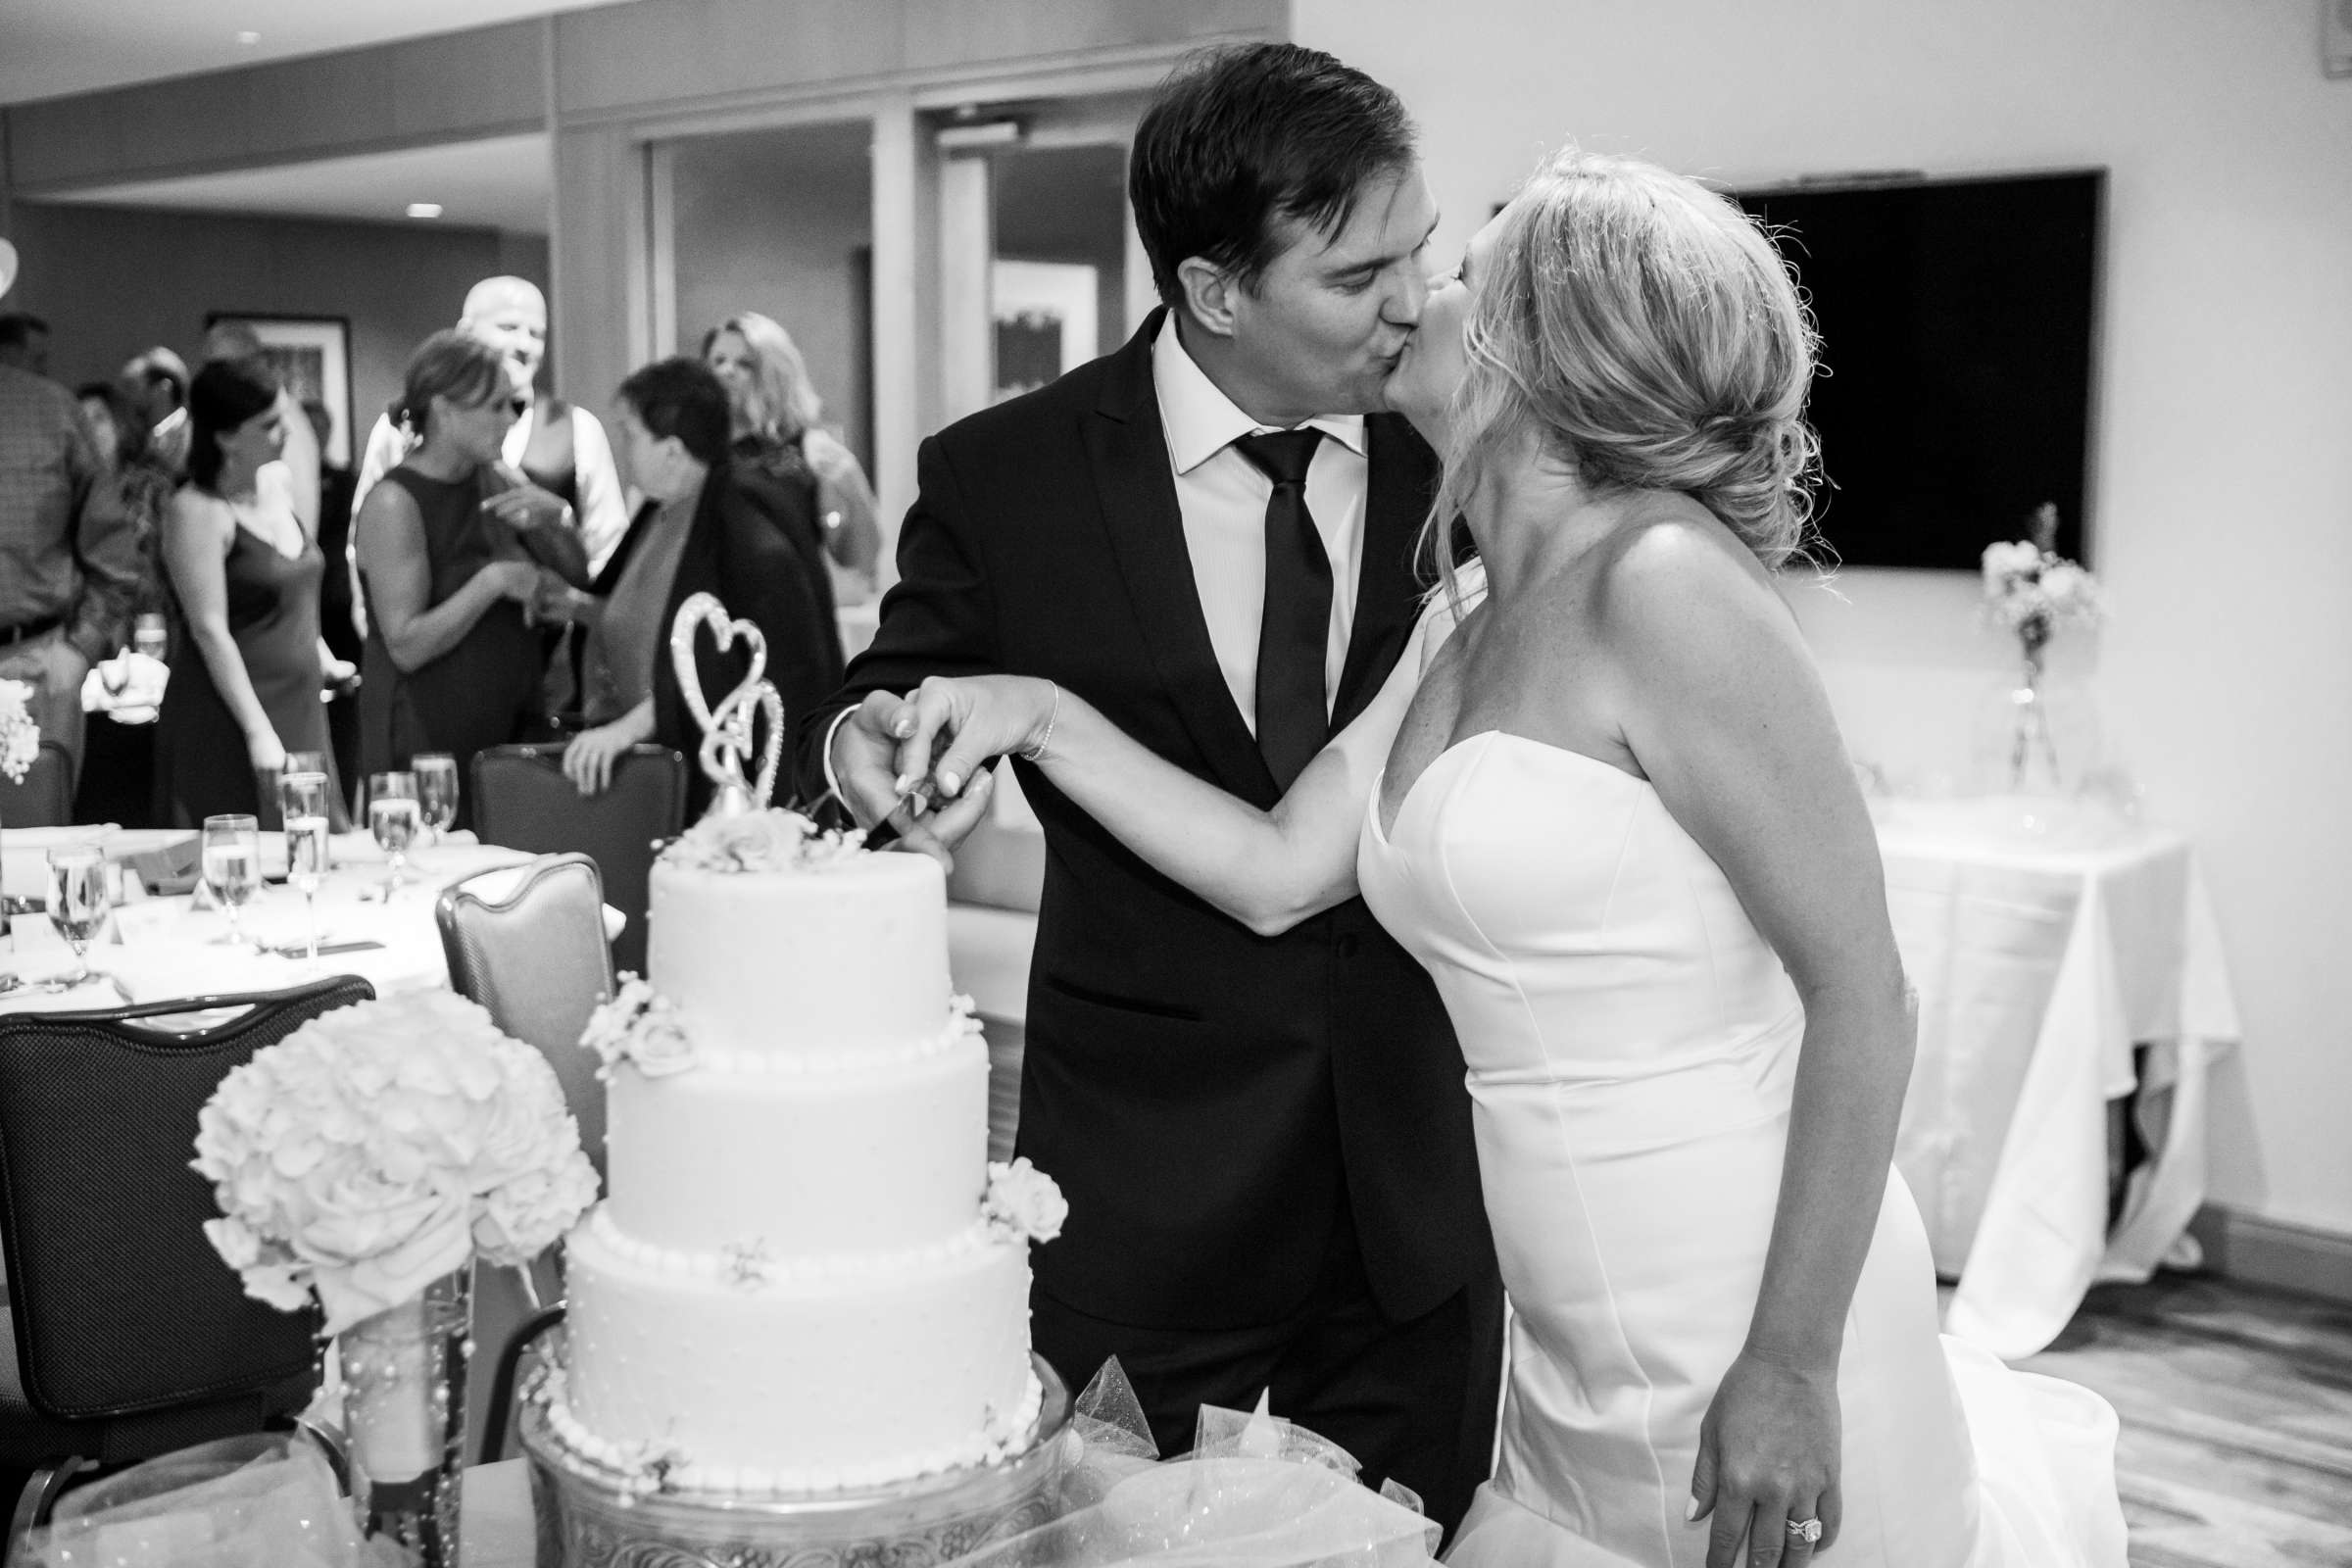 Hilton San Diego Bayfront Wedding, Debi and Dan Wedding Photo #484054 by True Photography